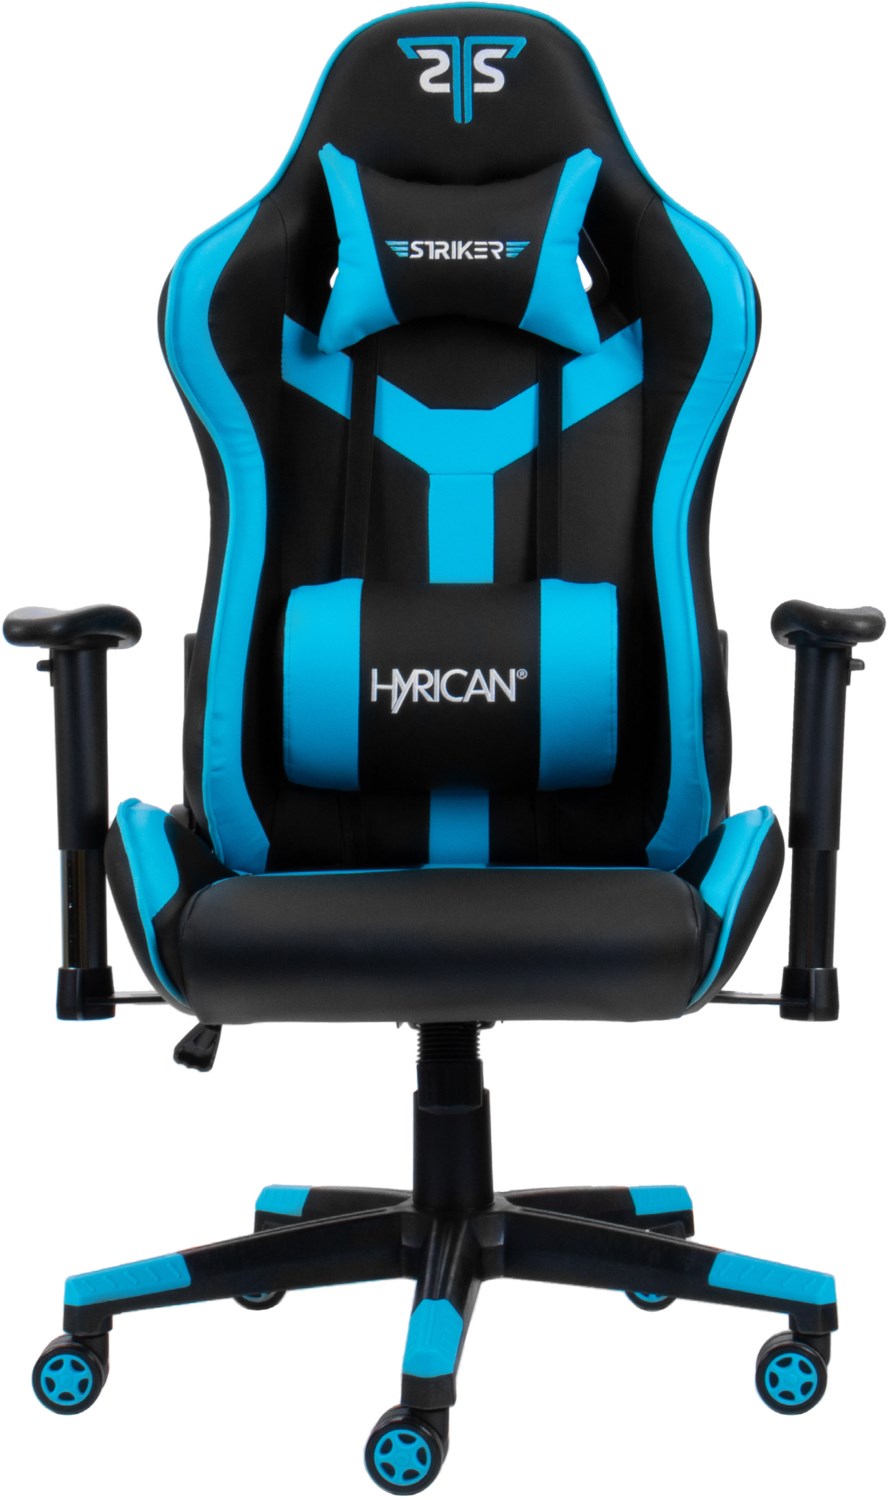 Striker Gaming Chair